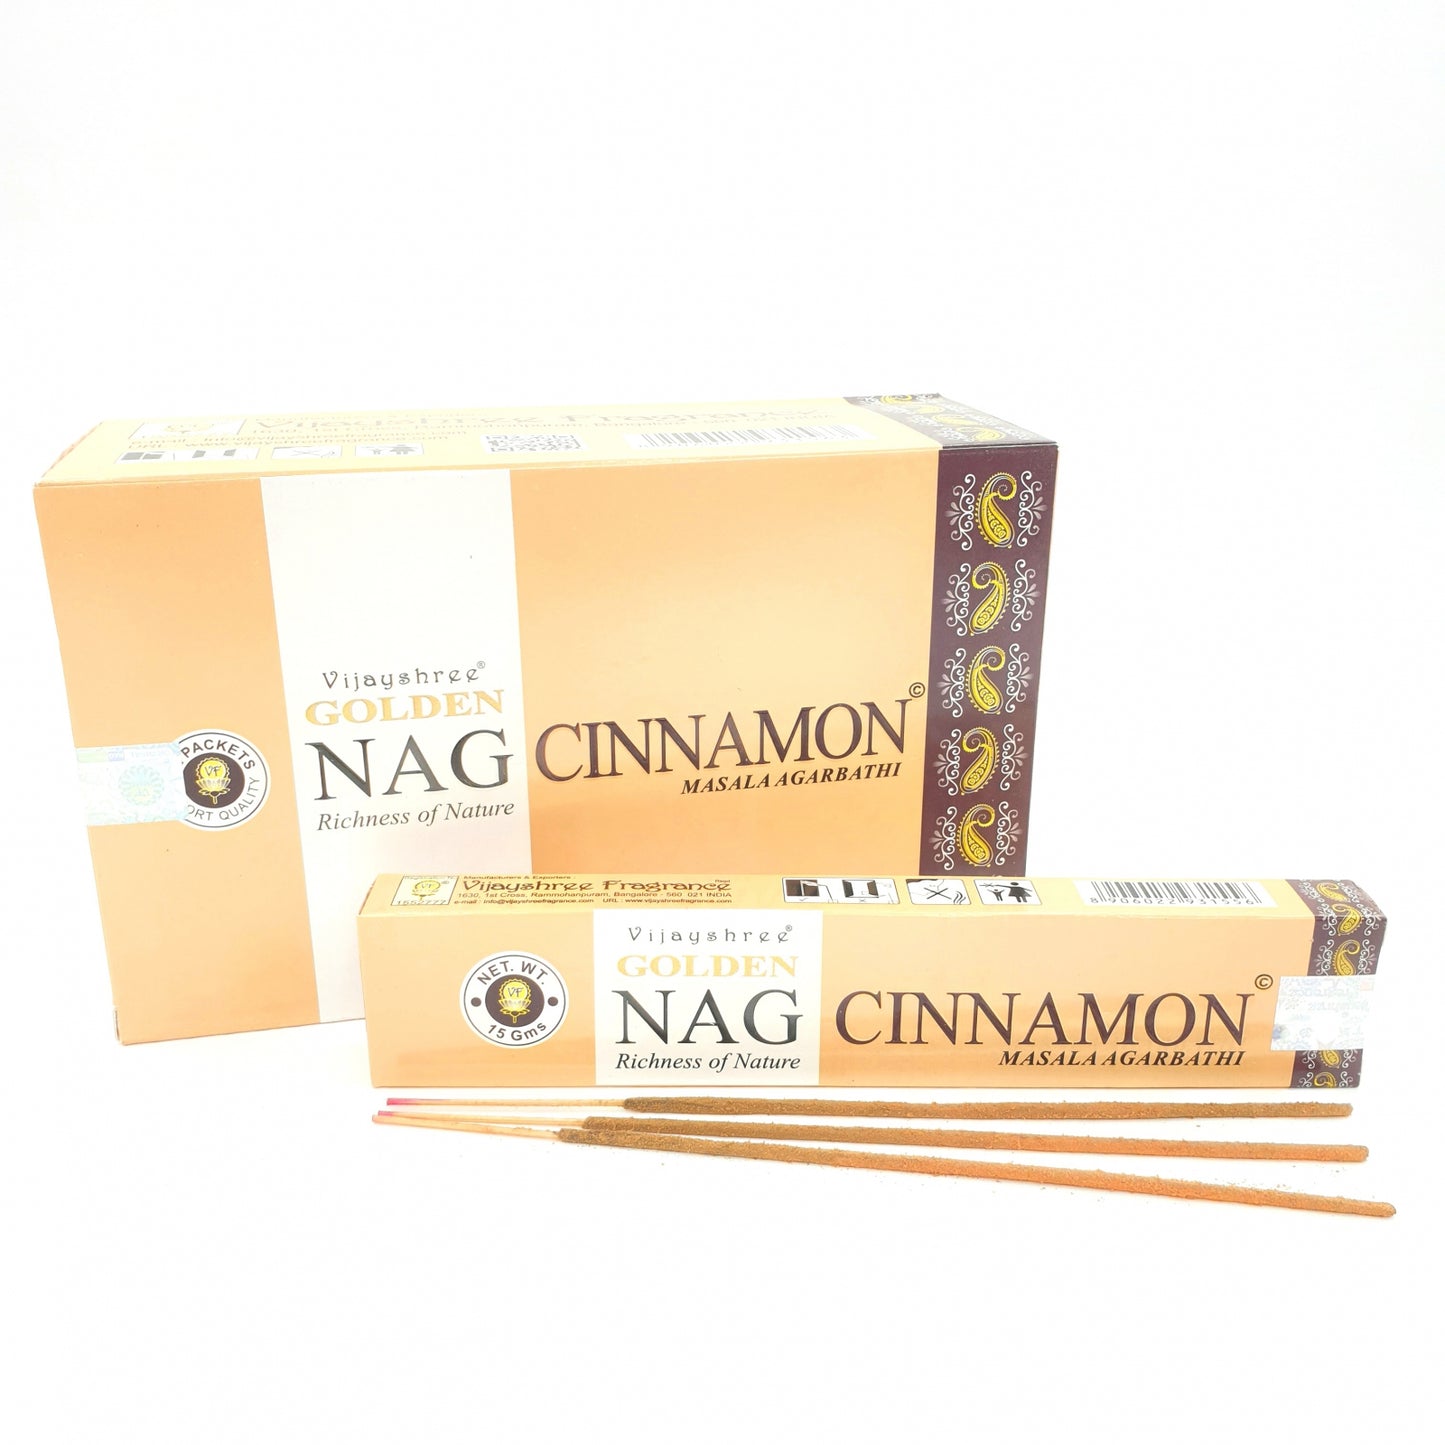 Golden Nag Cinnamon - Die Wärme der Natur in jedem Stäbchen